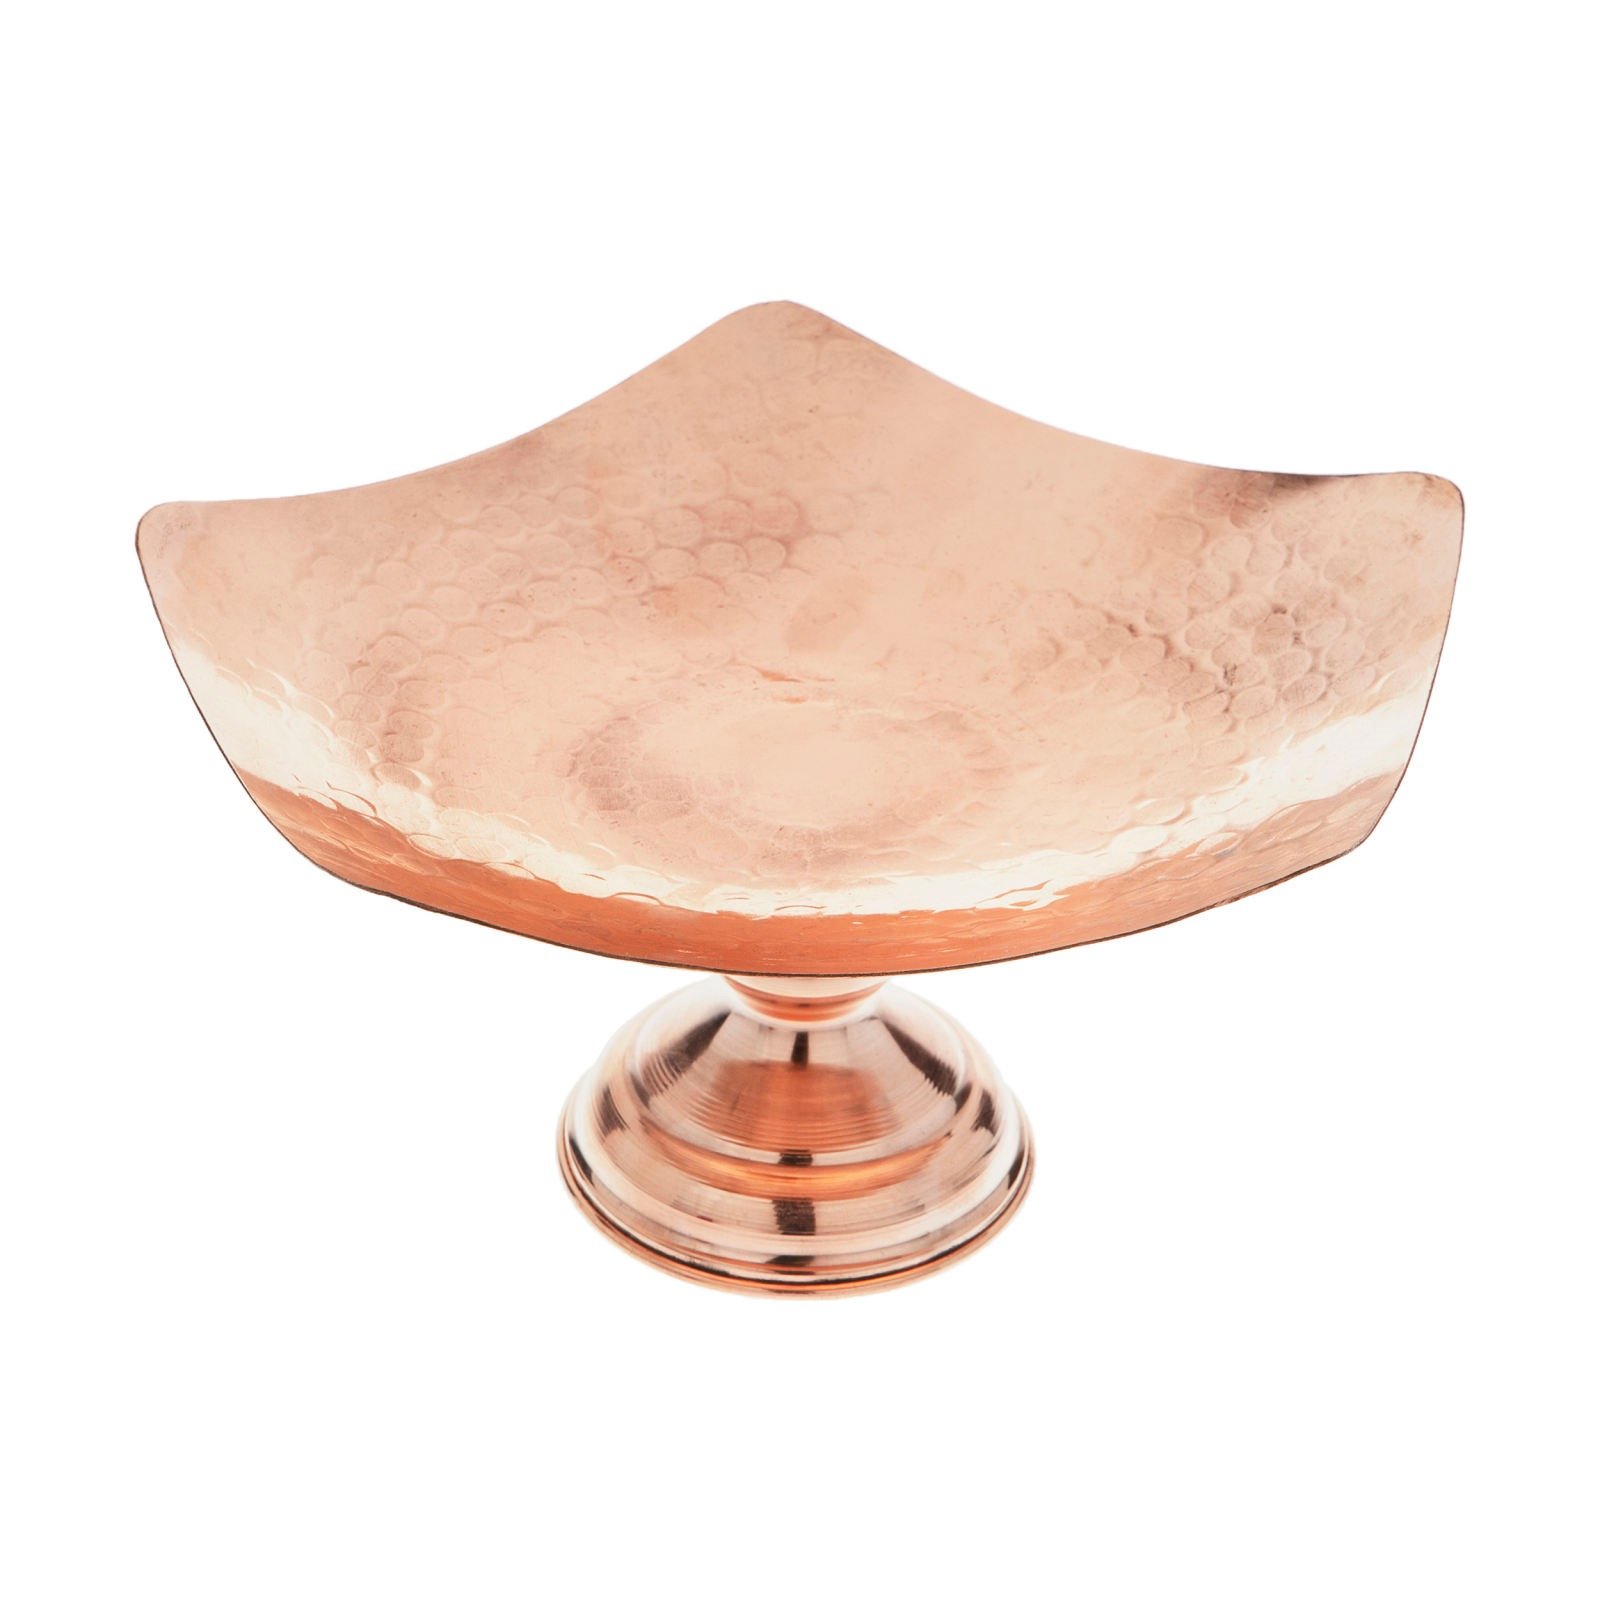 Handicraft Copper dish model C04, prix de la cuillère en cuivre, prix du verre en cuivre, prix de l'artisanat en cuivre